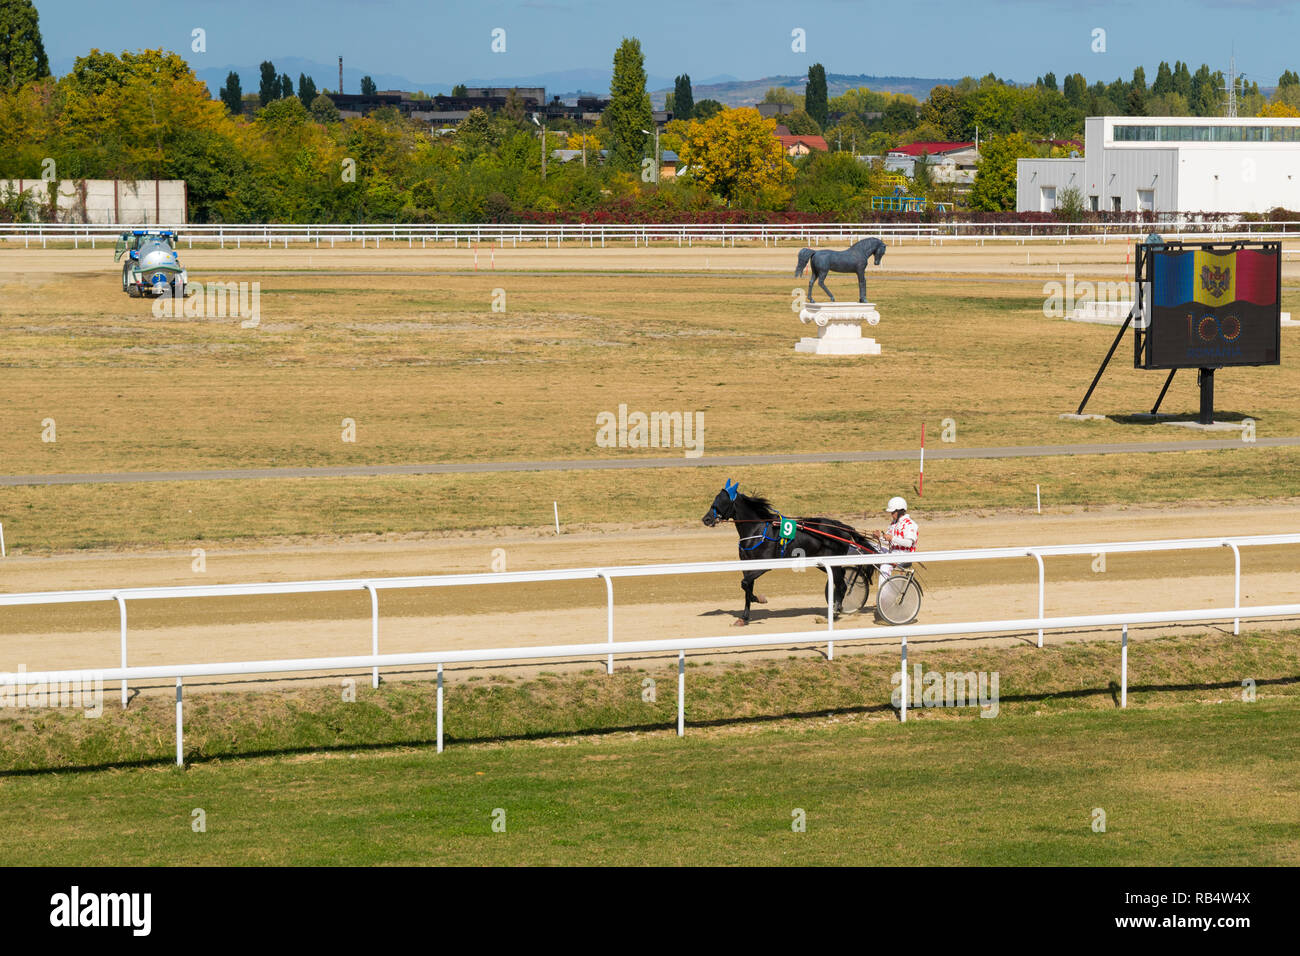 Ploiesti, Roumanie - 10 octobre 2018 : jockey et cheval participant à une course de chevaux à l'aide de sulky sur hippodrome en Ploiesti Prahova, Roumanie. Banque D'Images